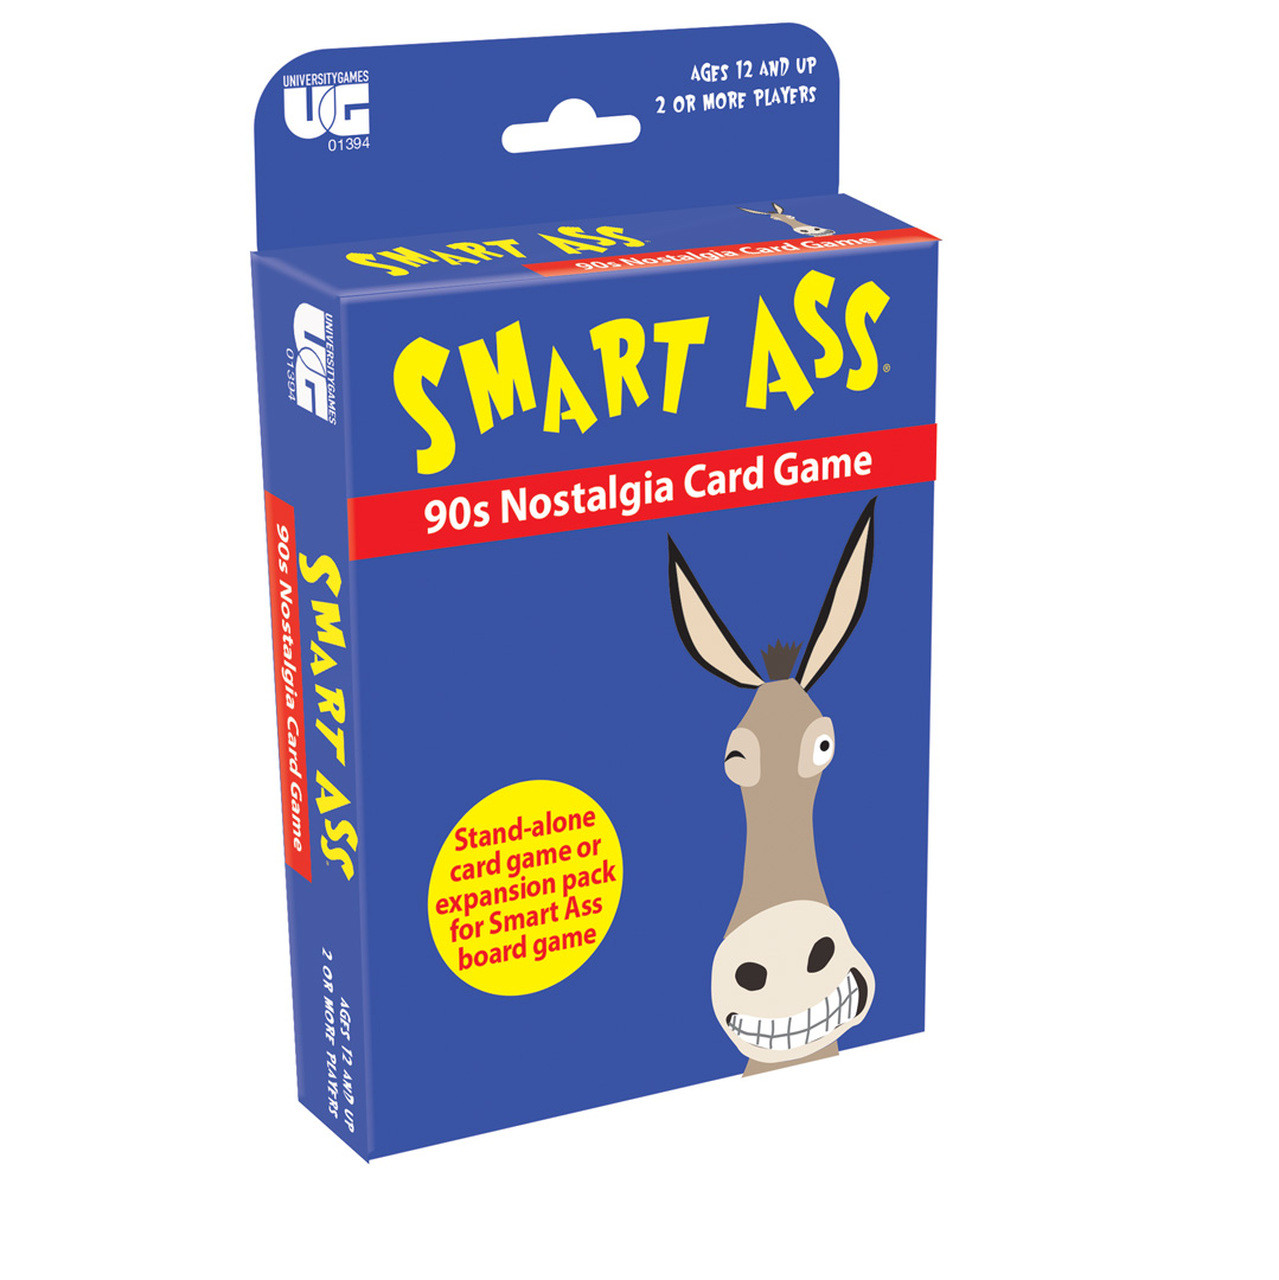 carol maag recommends Smart Ass Pics